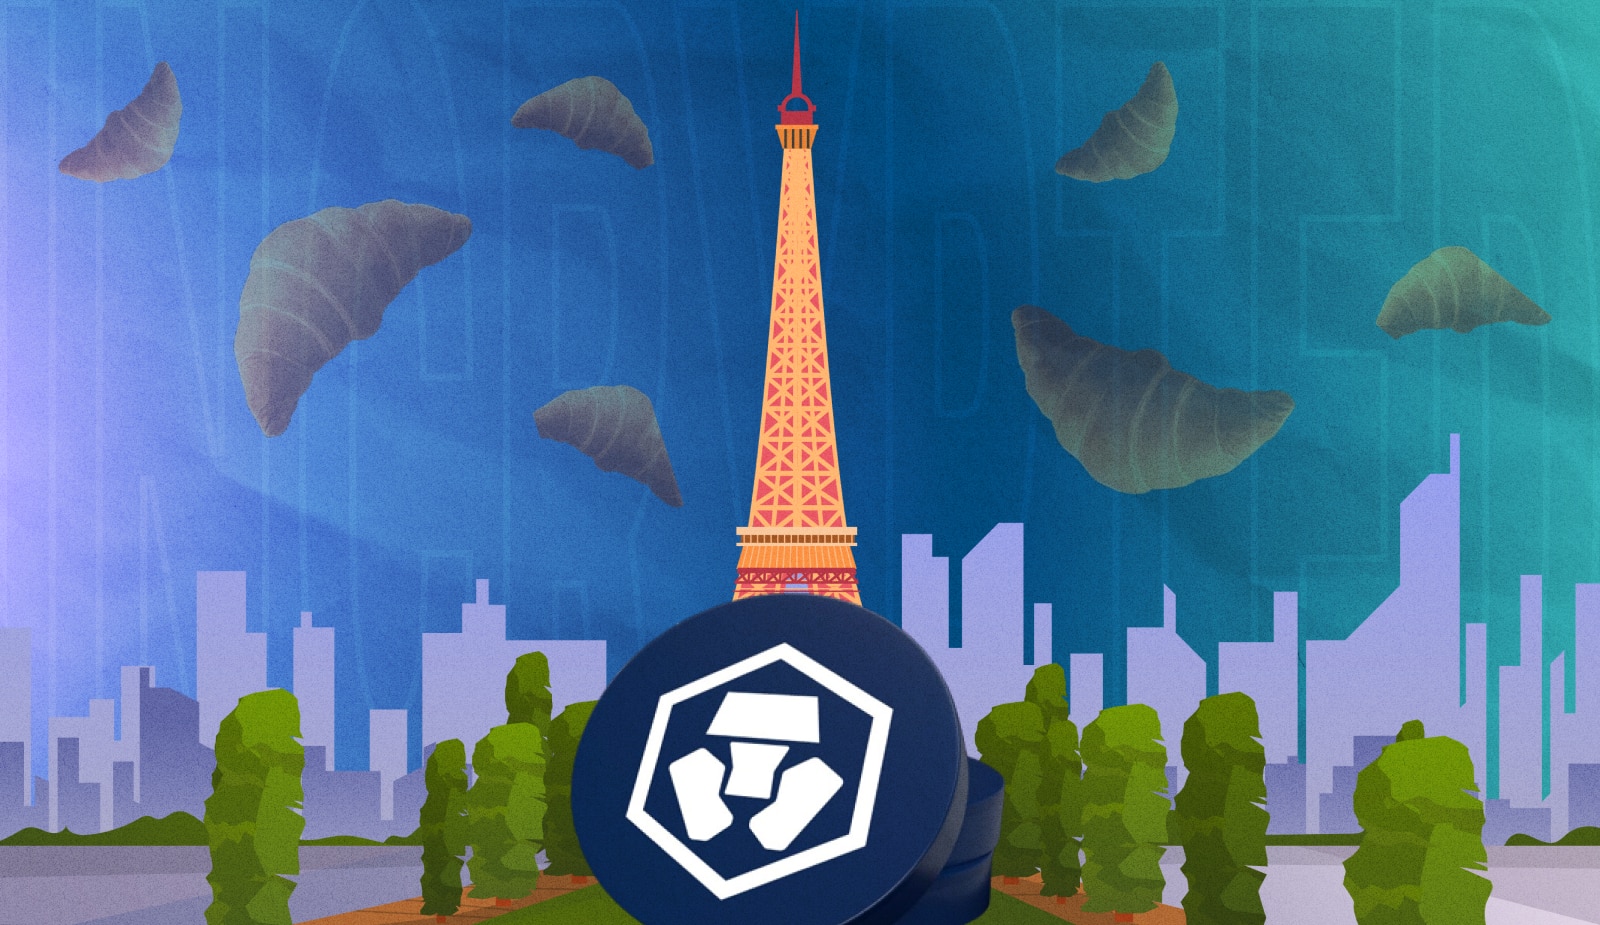 Crypto.com створять у Парижі європейську штаб-квартиру і вкладуть $150 млн. Головний колаж новини.